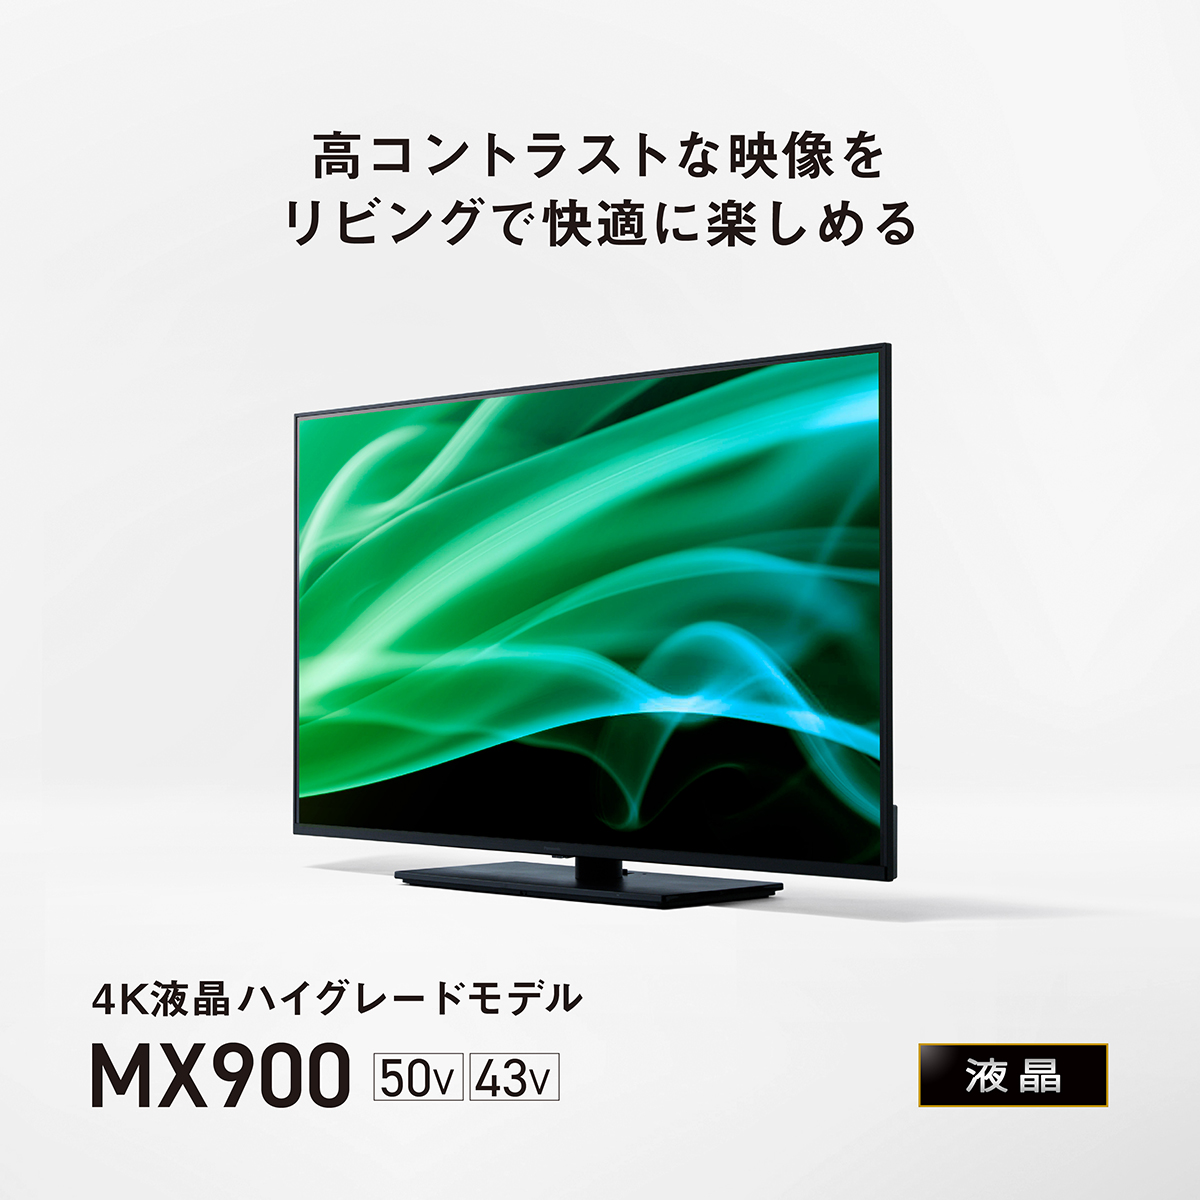 4Kダブルチューナー内蔵 液晶テレビ MX900シリーズ | 4K液晶・有機EL ...